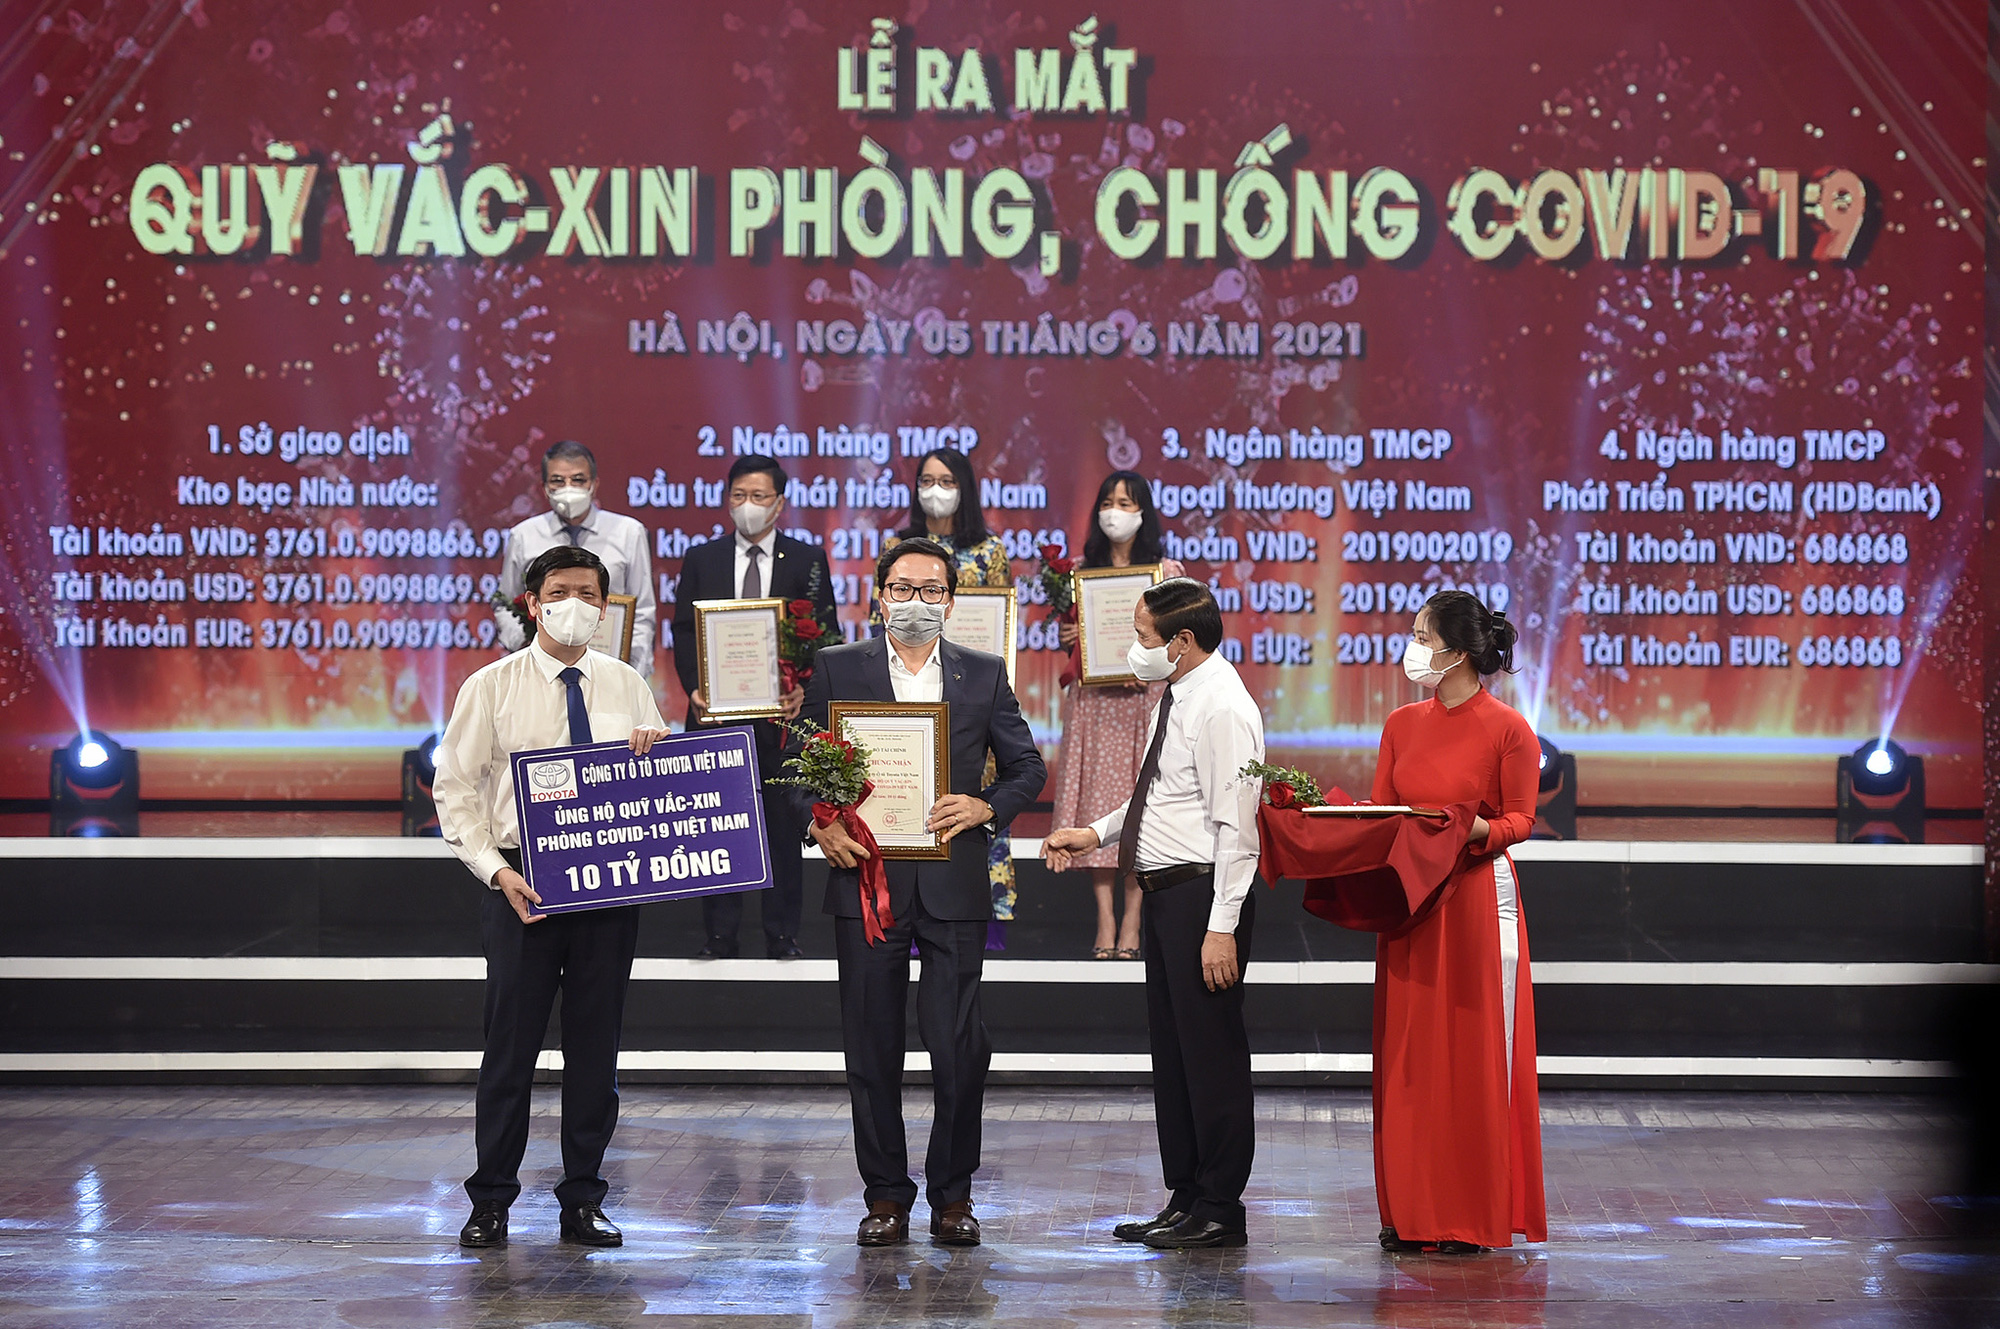 Toyota Việt Nam ủng hộ 10 tỷ đồng cho Quỹ Vaccine phòng Covid-19 - Ảnh 1.